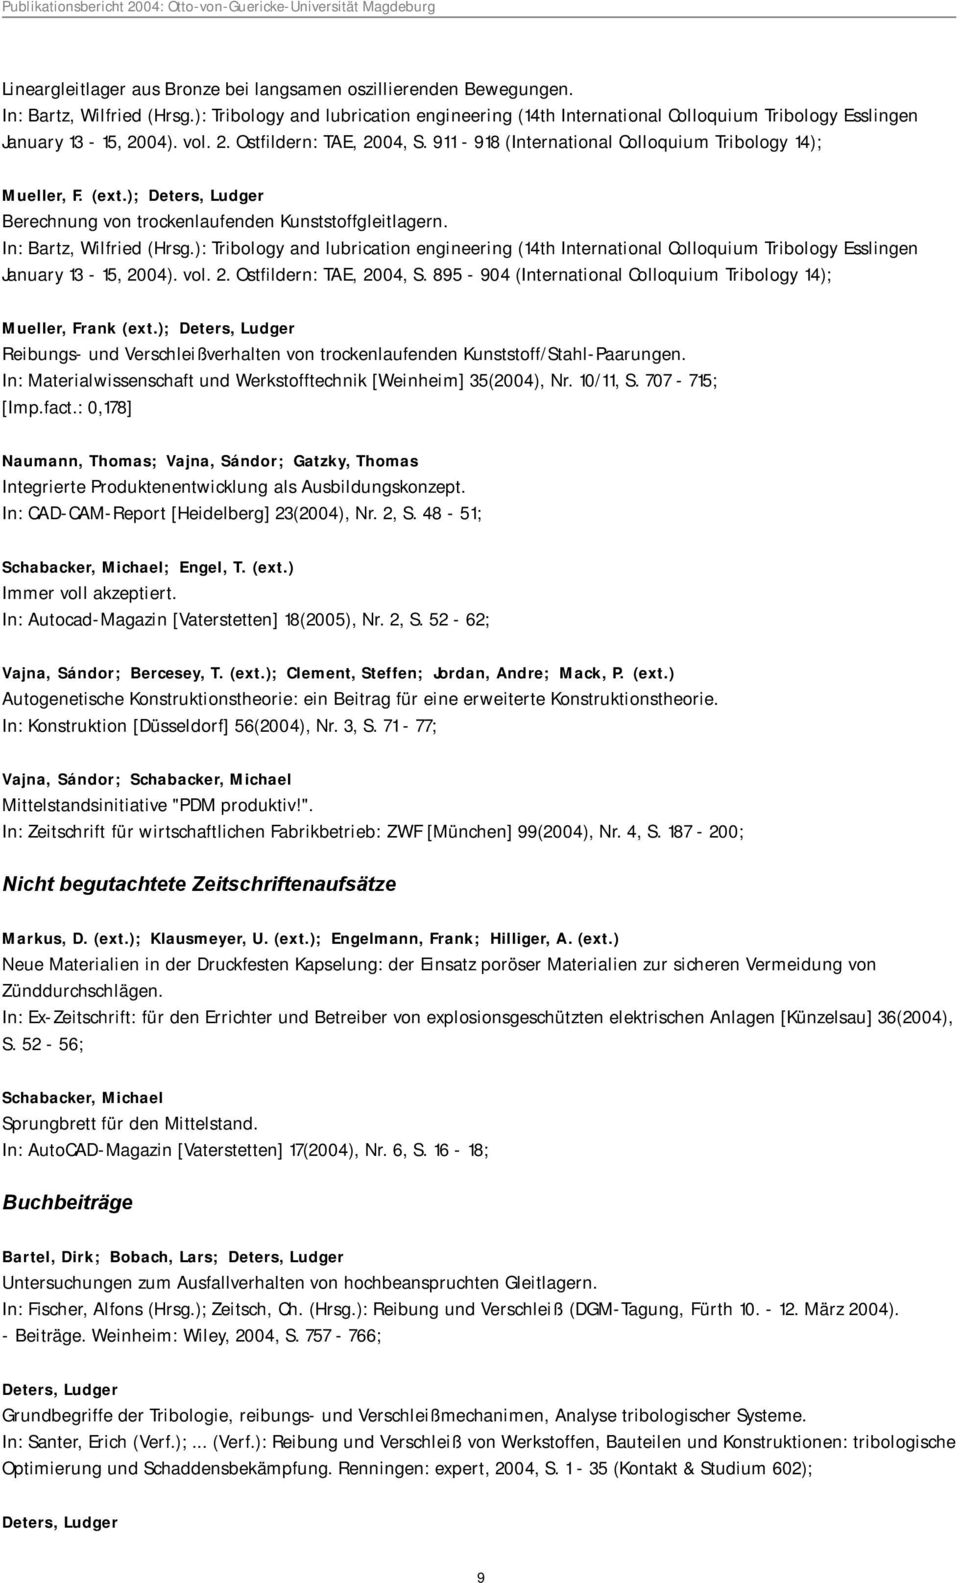 911-918 (International Colloquium Tribology 14); Mueller, F. (ext.); Deters, Ludger Berechnung von trockenlaufenden Kunststoffgleitlagern. In: Bartz, Wilfried (Hrsg.